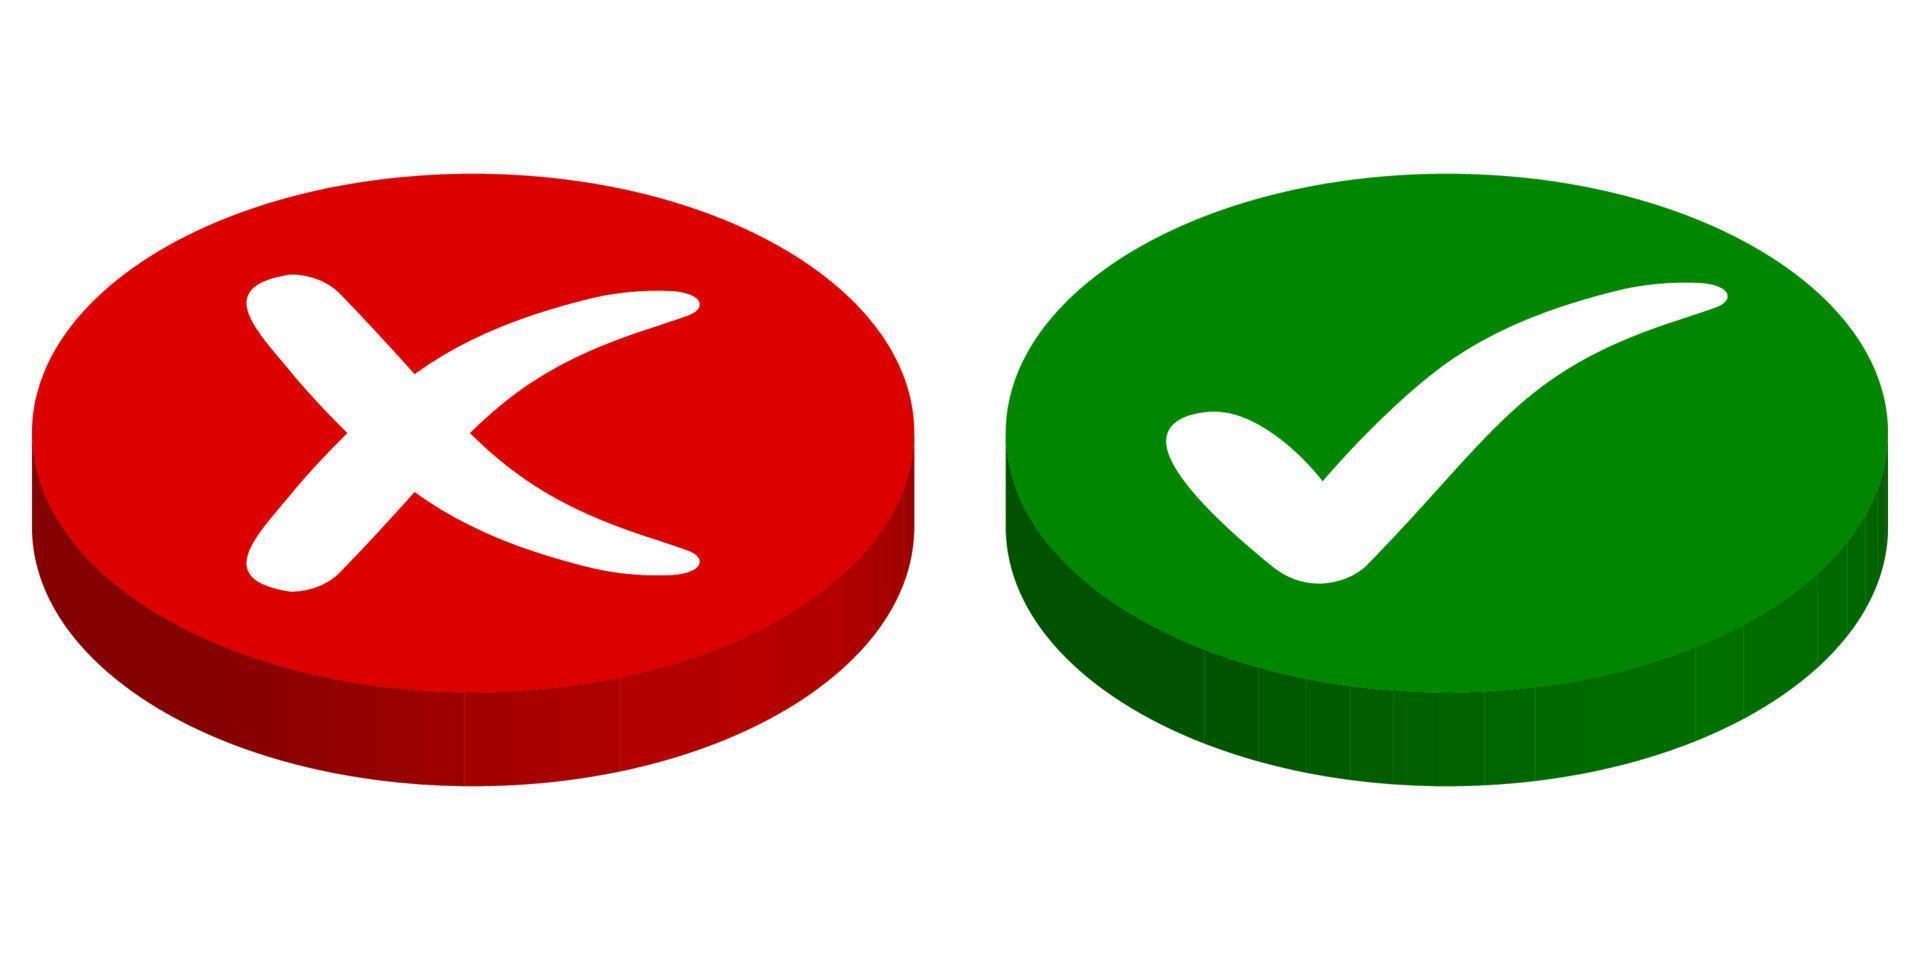 botões entrada saída, rejeitado aprovado, vetor Cruz marca e Verifica marca, verde começar, vermelho Pare botões